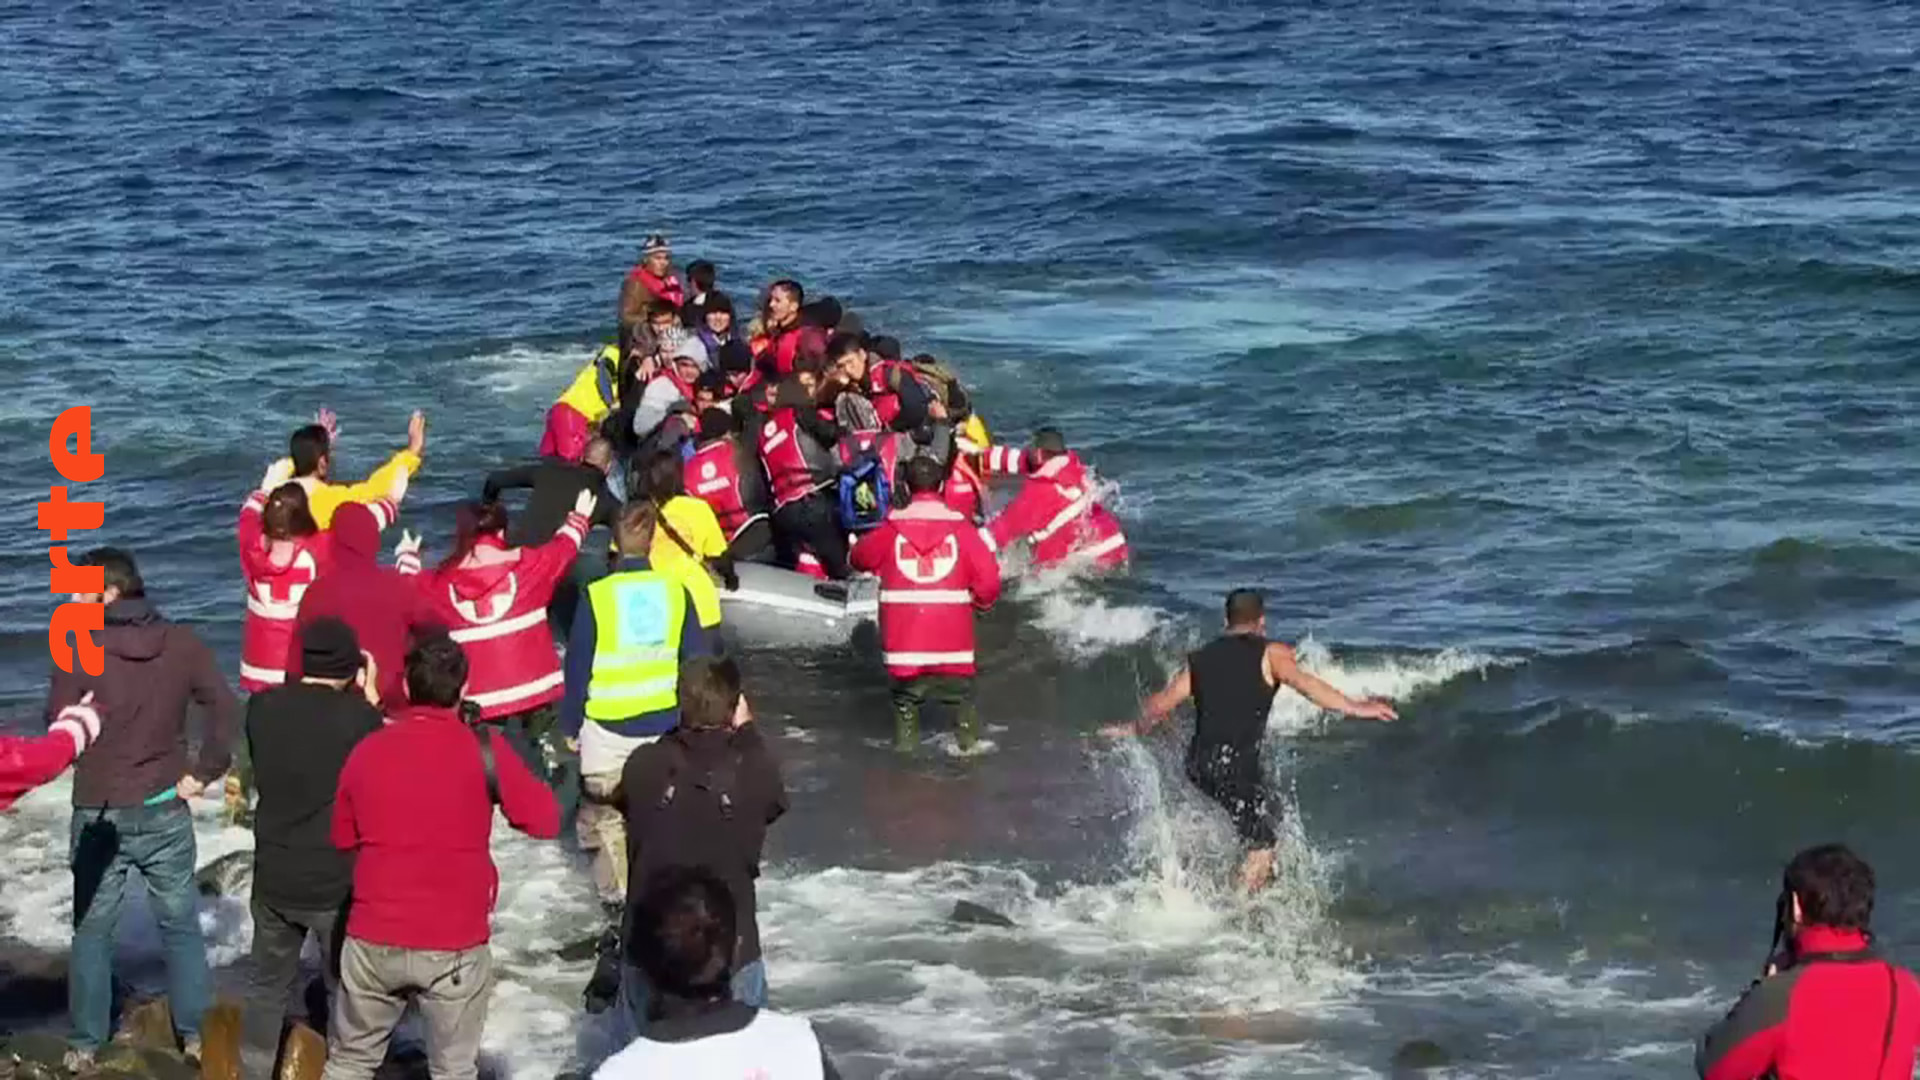 Europa wird von Flüchtlingen überflutet